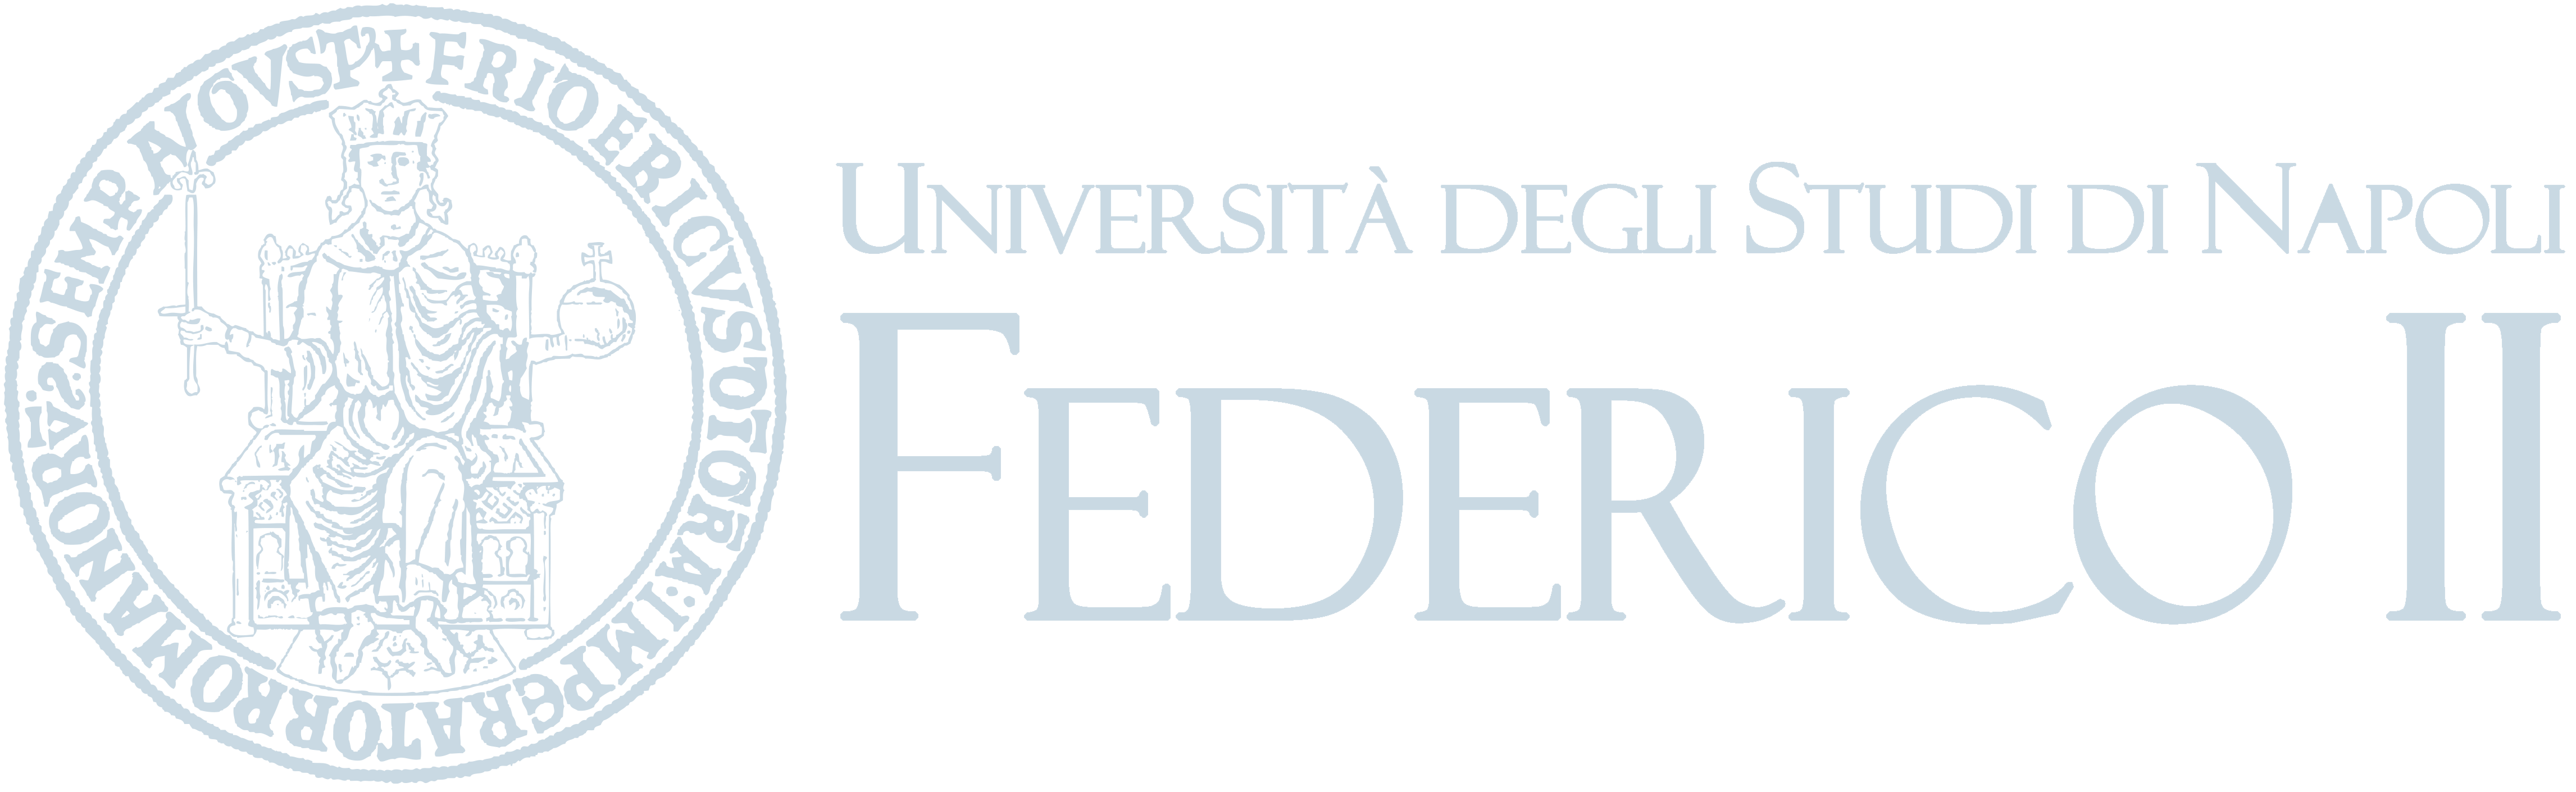 Università degli studi Federico II